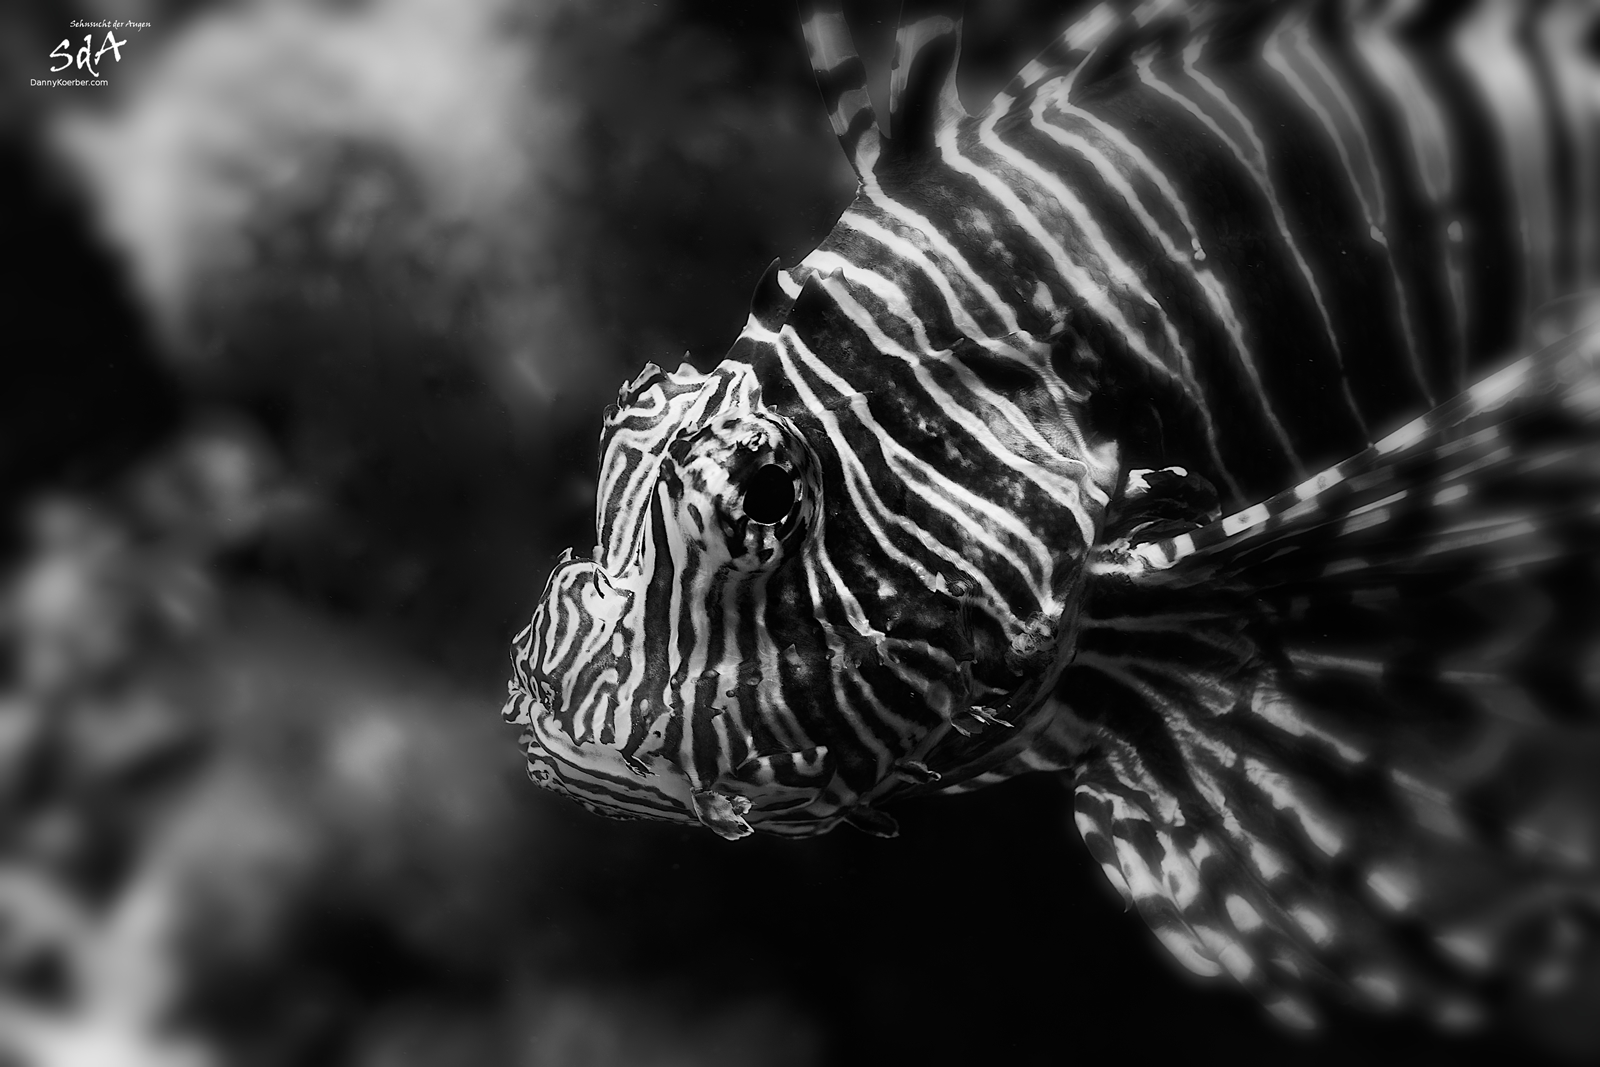 Der Löwenfisch beobachtet uns. Wassertiere von Danny Koerber für Sehnsucht der Augen fotografiert.